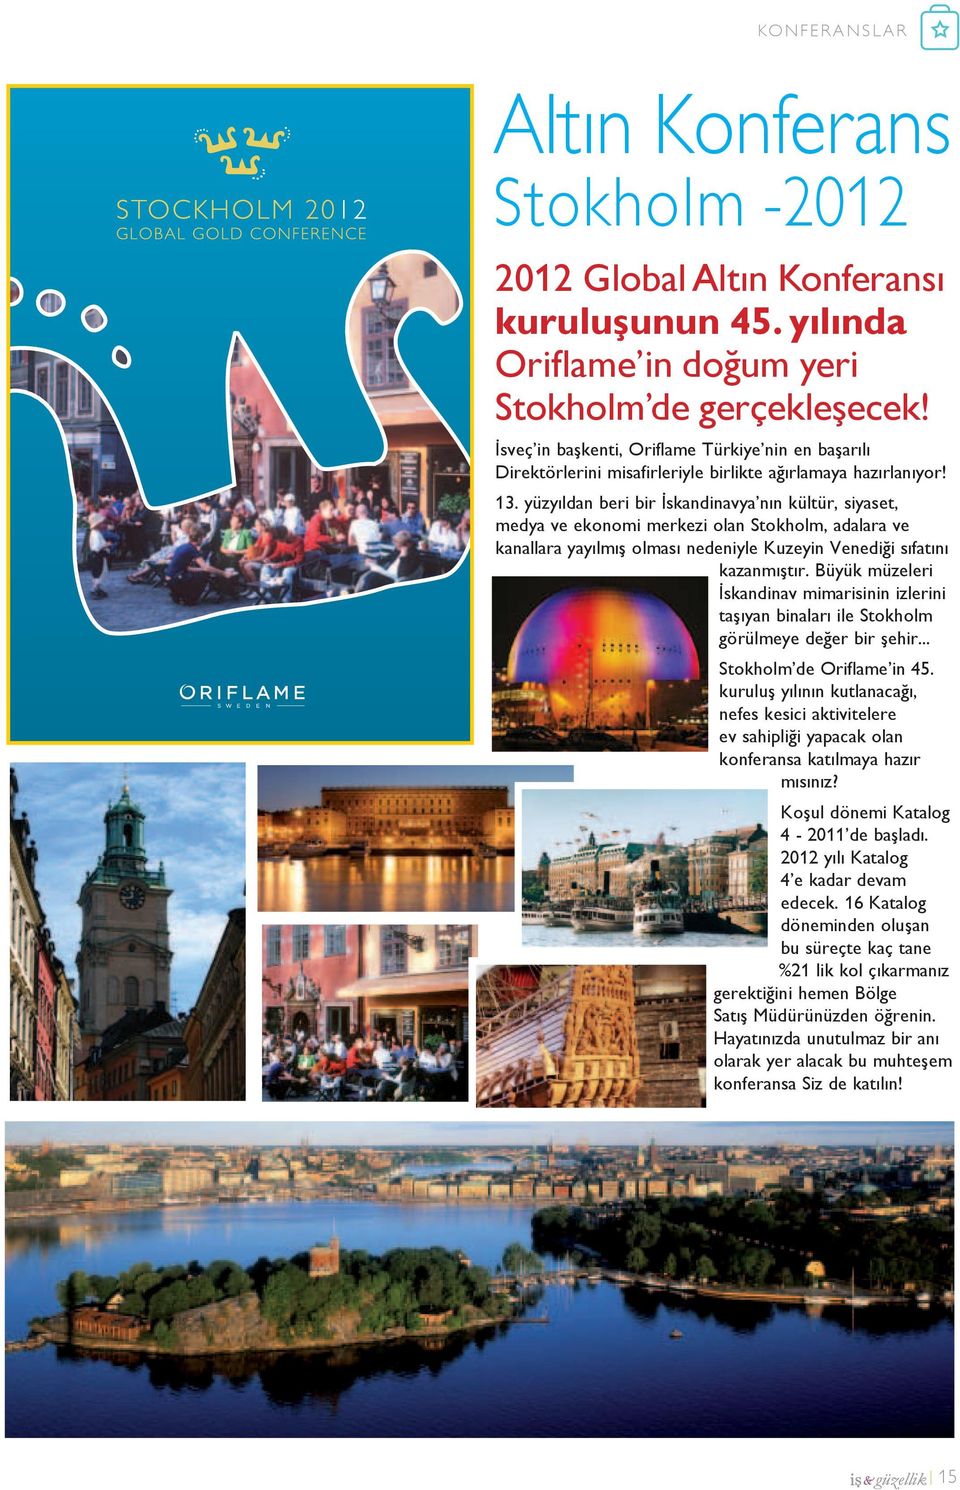 yüzyıldan beri bir İskandinavya nın kültür, siyaset, medya ve ekonomi merkezi olan Stokholm, adalara ve kanallara yayılmış olması nedeniyle Kuzeyin Venediği sıfatını kazanmıştır.